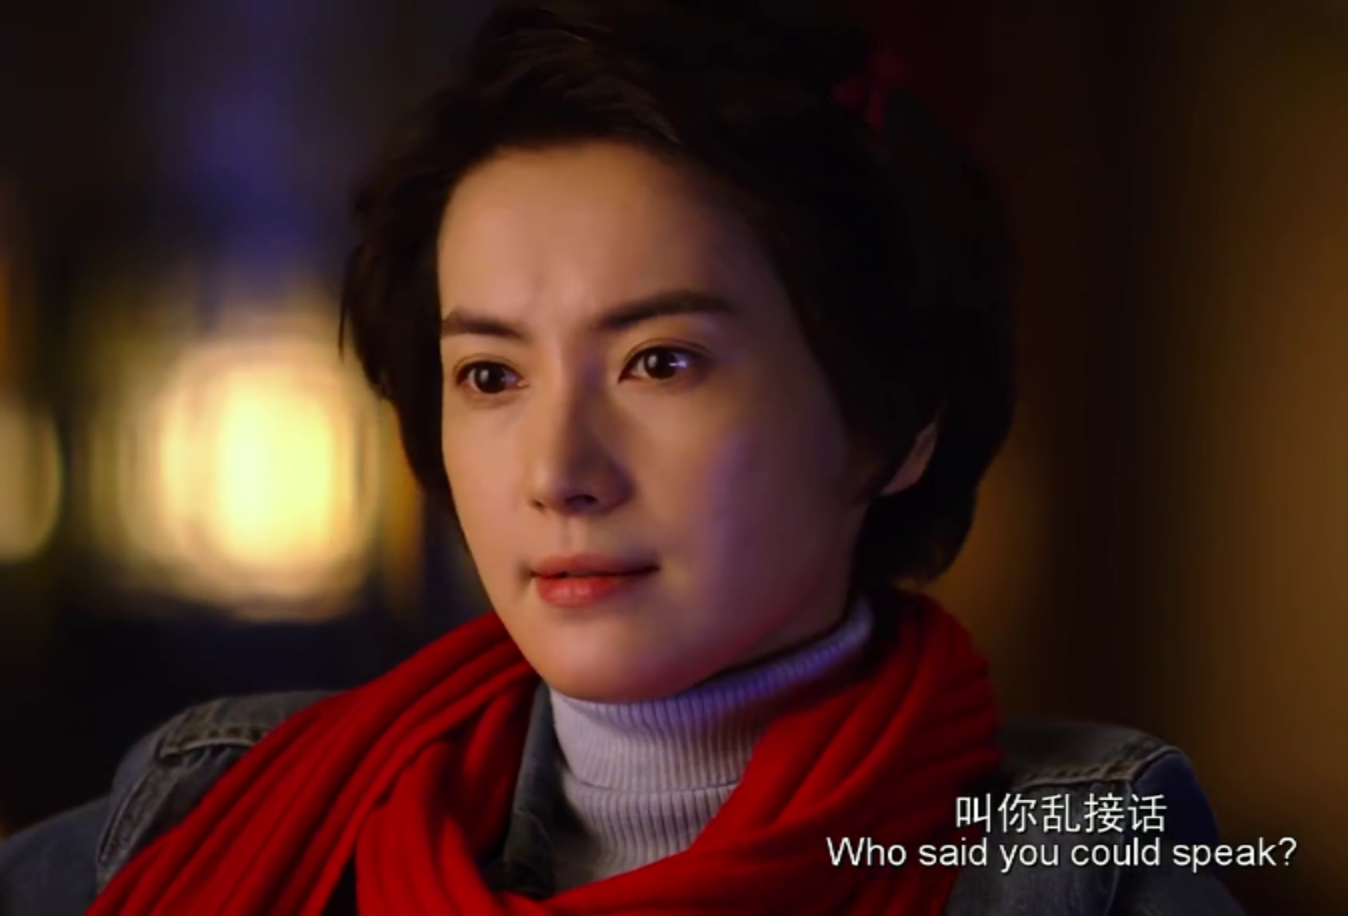 李媛在这部电影中的形象有种中性的美,喜欢她吗?